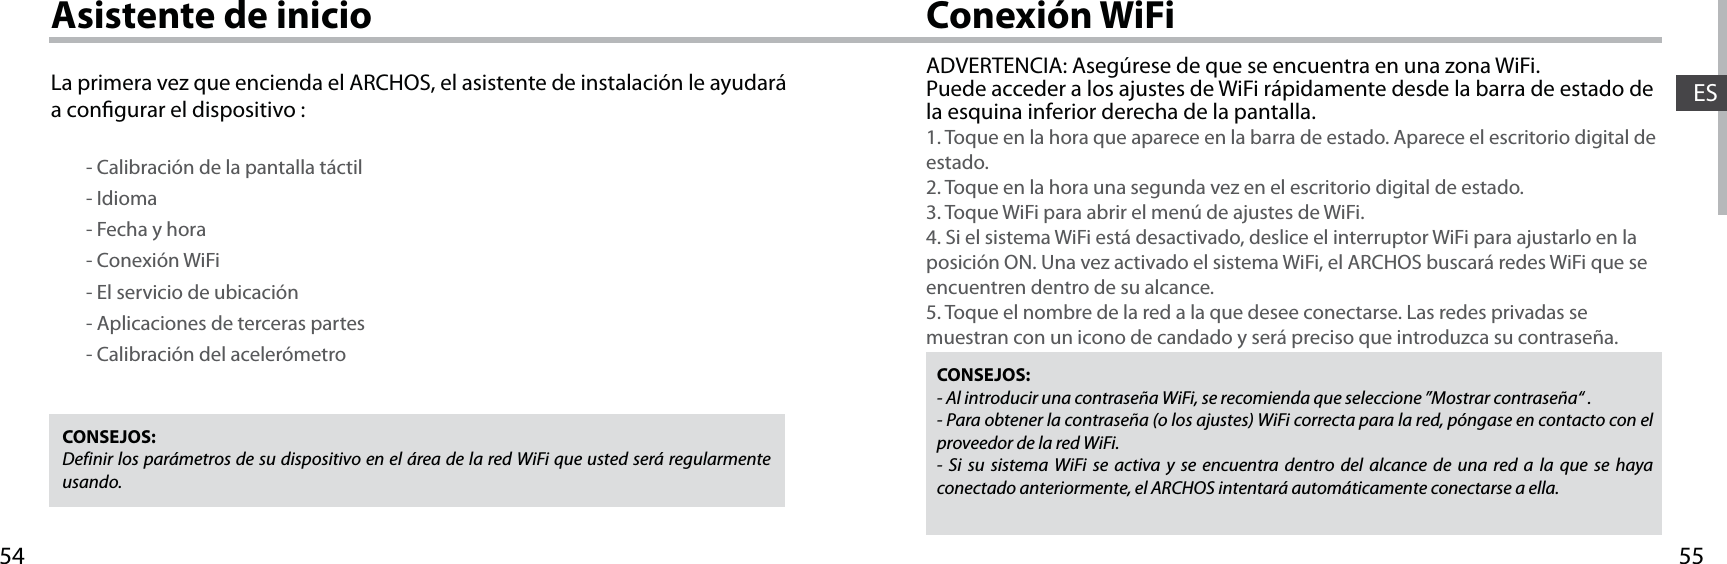 5554ESConexión WiFiAsistente de inicioCONSEJOS: Definir los parámetros de su dispositivo en el área de la red WiFi que usted será regularmente usando.CONSEJOS:- Al introducir una contraseña WiFi, se recomienda que seleccione ”Mostrar contraseña“ .- Para obtener la contraseña (o los ajustes) WiFi correcta para la red, póngase en contacto con el proveedor de la red WiFi.- Si su sistema WiFi se activa y se encuentra dentro del alcance de una red a la que se haya conectado anteriormente, el ARCHOS intentará automáticamente conectarse a ella.ADVERTENCIA: Asegúrese de que se encuentra en una zona WiFi. Puede acceder a los ajustes de WiFi rápidamente desde la barra de estado de la esquina inferior derecha de la pantalla.1. Toque en la hora que aparece en la barra de estado. Aparece el escritorio digital de estado.2. Toque en la hora una segunda vez en el escritorio digital de estado. 3. Toque WiFi para abrir el menú de ajustes de WiFi.4. Si el sistema WiFi está desactivado, deslice el interruptor WiFi para ajustarlo en la posición ON. Una vez activado el sistema WiFi, el ARCHOS buscará redes WiFi que se encuentren dentro de su alcance.5. Toque el nombre de la red a la que desee conectarse. Las redes privadas se muestran con un icono de candado y será preciso que introduzca su contraseña. La primera vez que encienda el ARCHOS, el asistente de instalación le ayudará a congurar el dispositivo :        - Calibración de la pantalla táctil        - Idioma        - Fecha y hora         - Conexión WiFi        - El servicio de ubicación        - Aplicaciones de terceras partes        - Calibración del acelerómetro